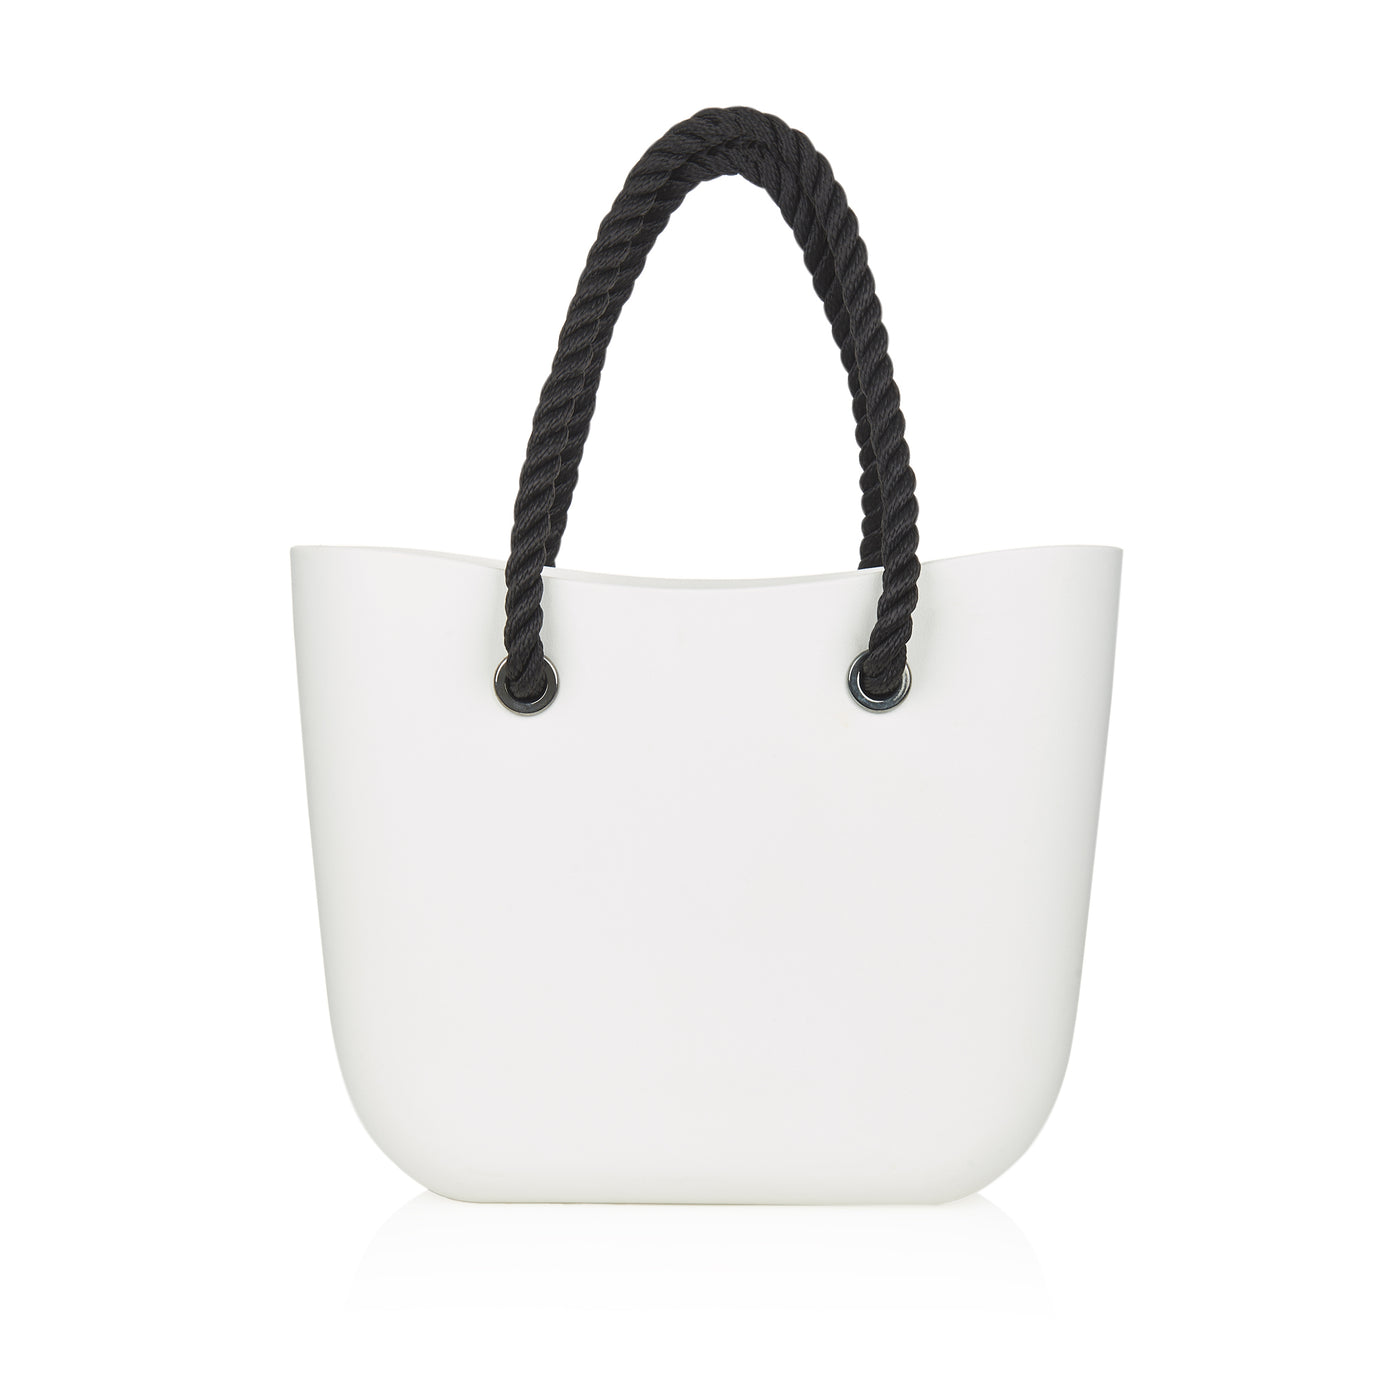 Amazon.com: Hirooms Neoprene Tote Bag Multipurpose Beach Bag Travel  Shoulder Bag Waterproof Pool Bag for Women & Men (Black) : Clothing, Shoes  & Jewelry